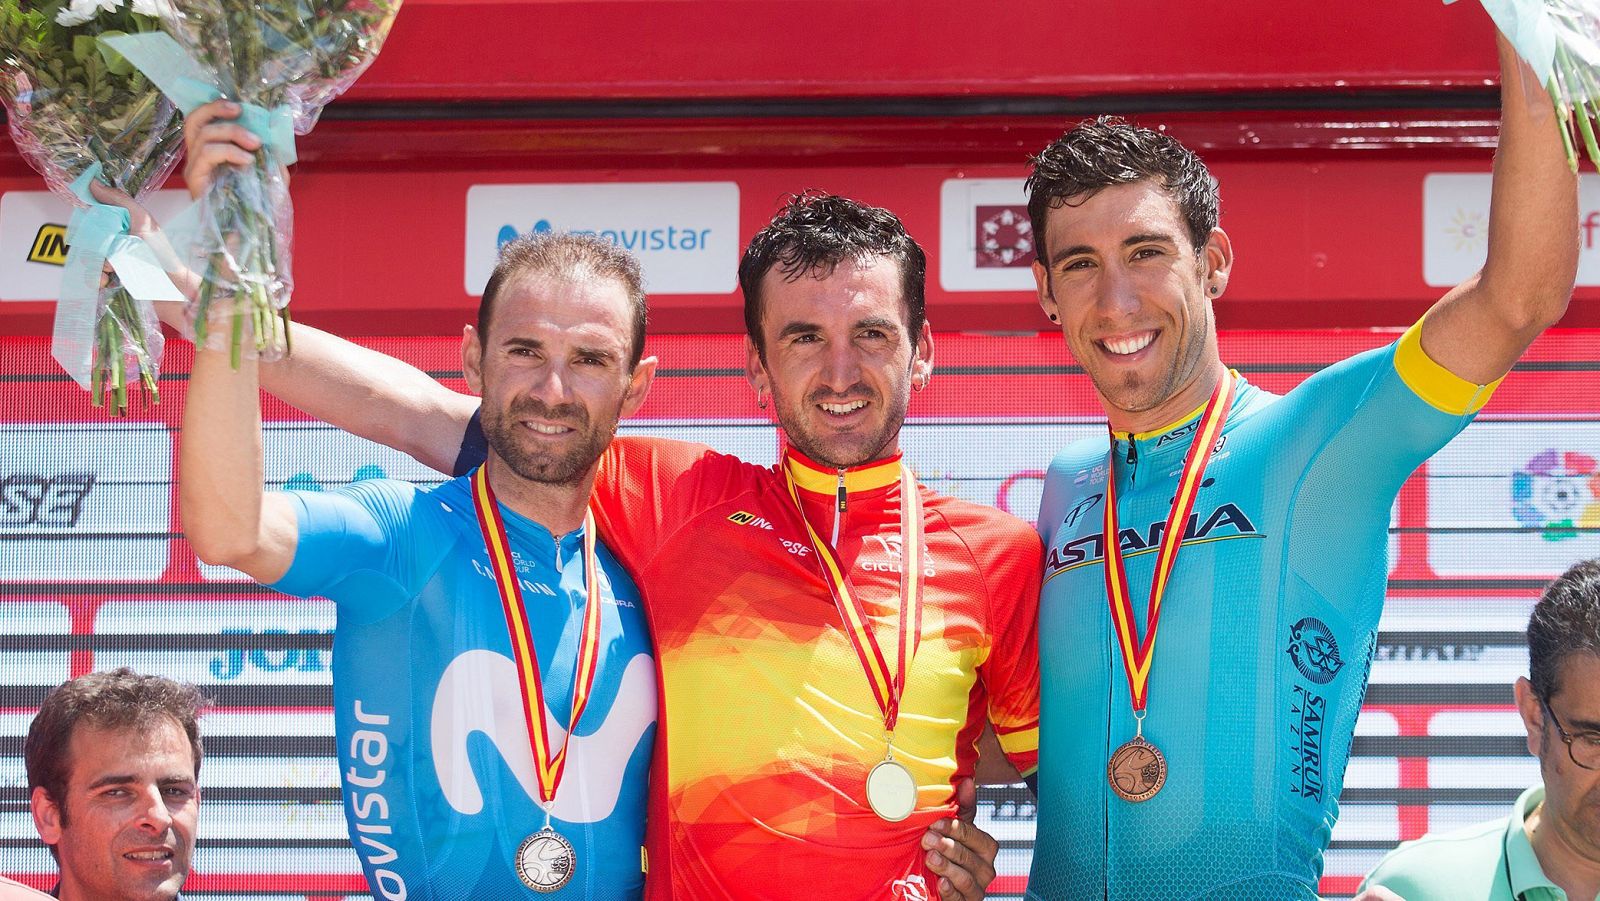 El podio del Campeonato de España, con Izaguirre en el centro, flanqueado por Valverde (i) y Fraile (d).